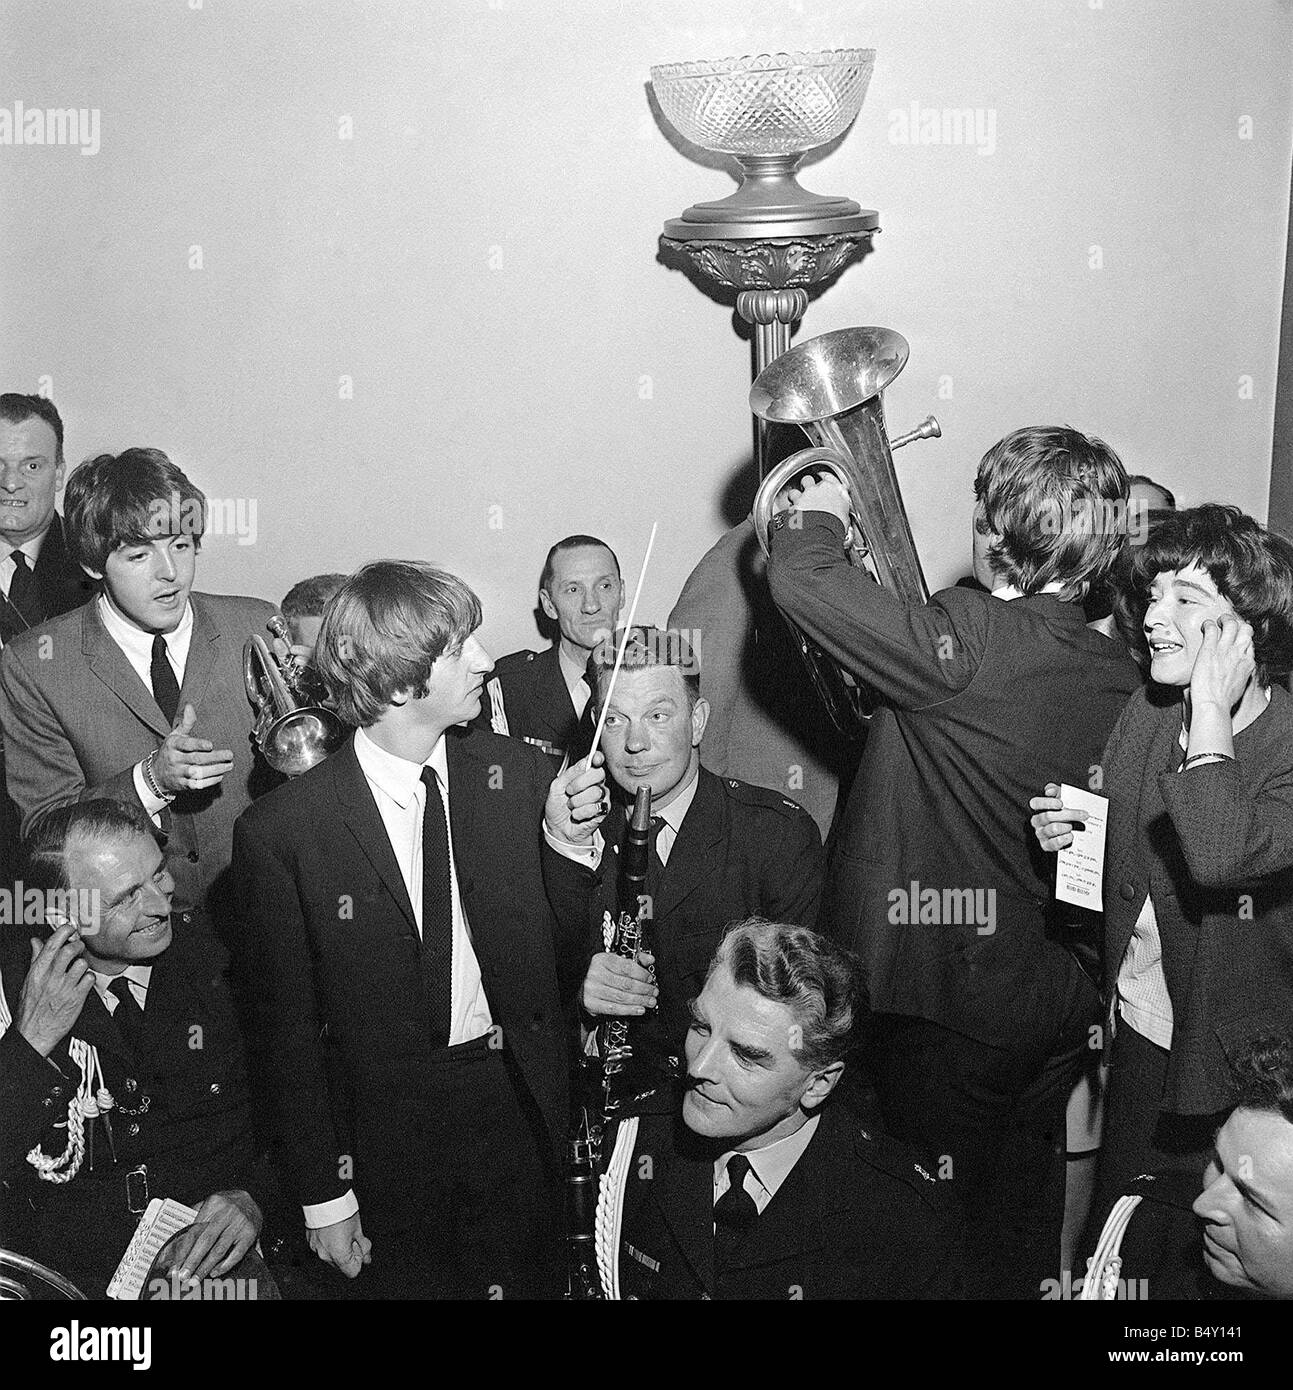 Gruppo pop The Beatles Luglio 1964 John Lennon Paul McCartney George Harrison Ringo Starr dei Beatles a Liverpool per la premiere del nord di una giornata intensa di notte Foto Stock